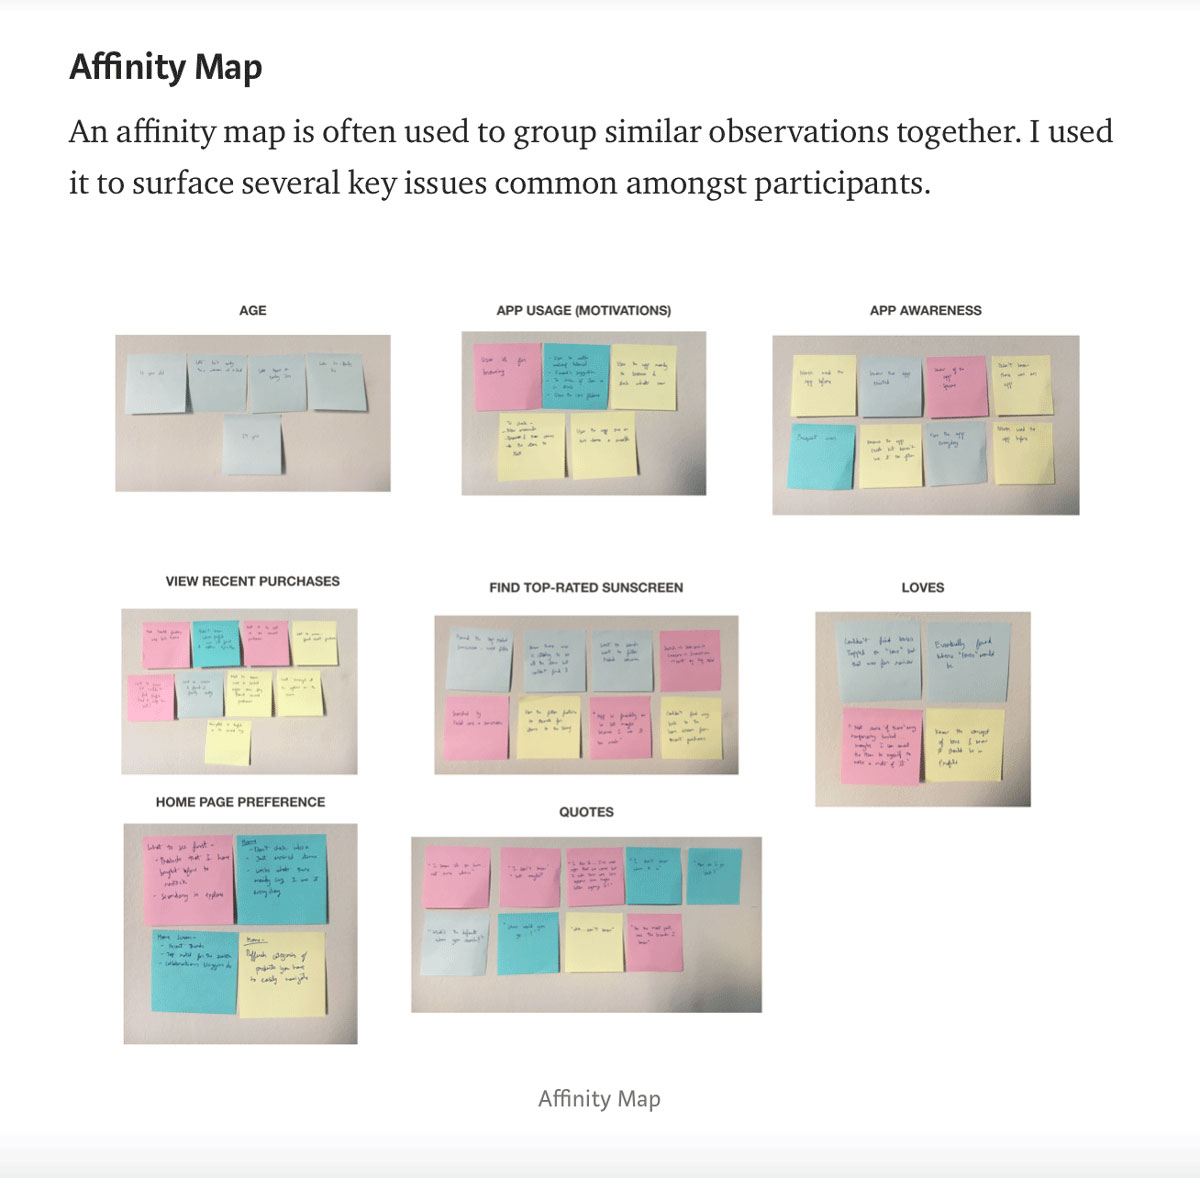 Affinity maps taken from Priyanka Gupta's UX design portfolio